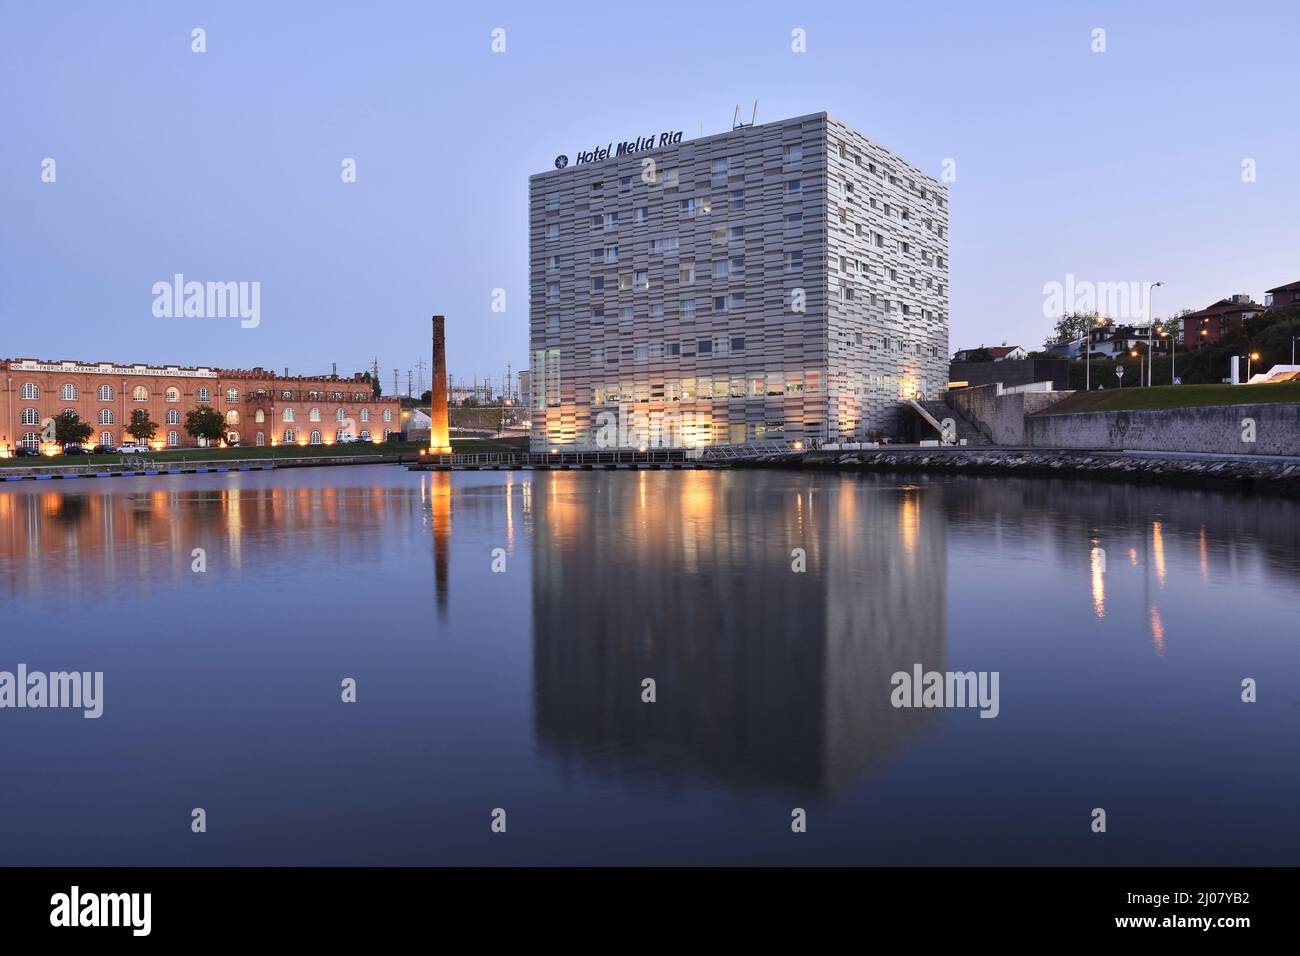 Das moderne Hotel Melia Ria und das Kongresszentrum (ehemaliges Fabrikgebäude) spiegeln sich in der Abenddämmerung im Canal do Cojo, Aveiro Portugal, wider. Stockfoto